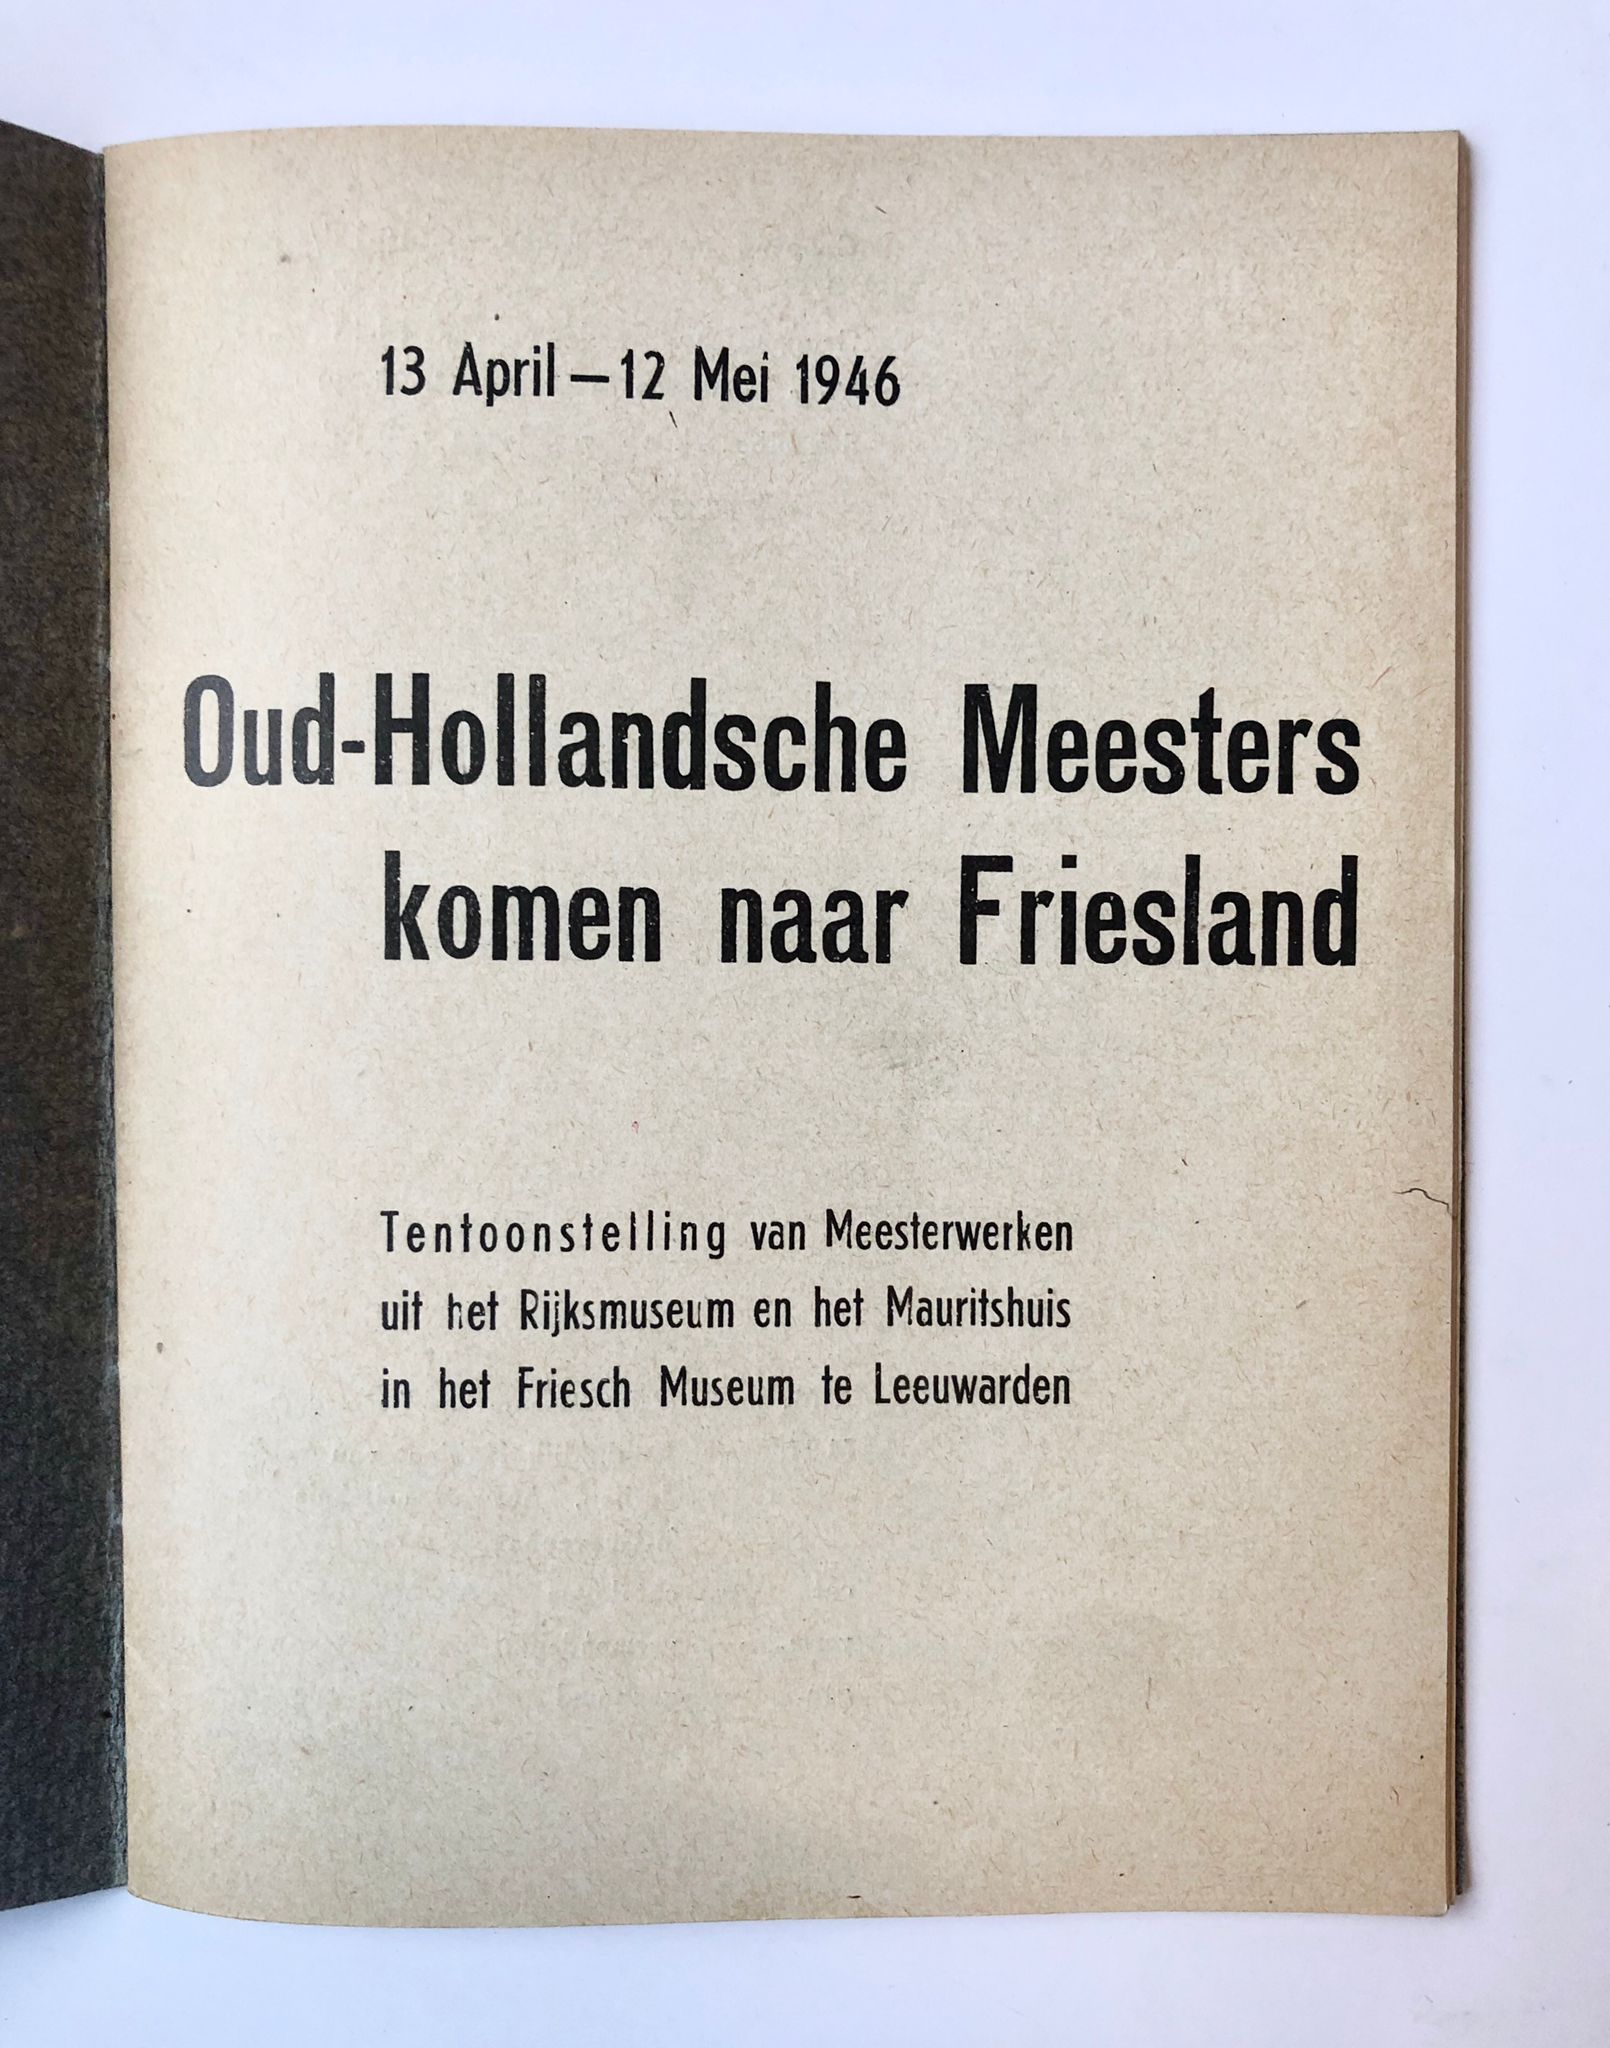 [Friesland, Museum-Catalogus, 1946] Oud-Hollandsche Meesters komen naar Friesland, 13 April – 12 Mei 1946, Tentoonstelling van meesterwerken uit het Rijksmuseum en het Mauritshuis in het Friesch Museum te Leeuwarden, 30 pp.